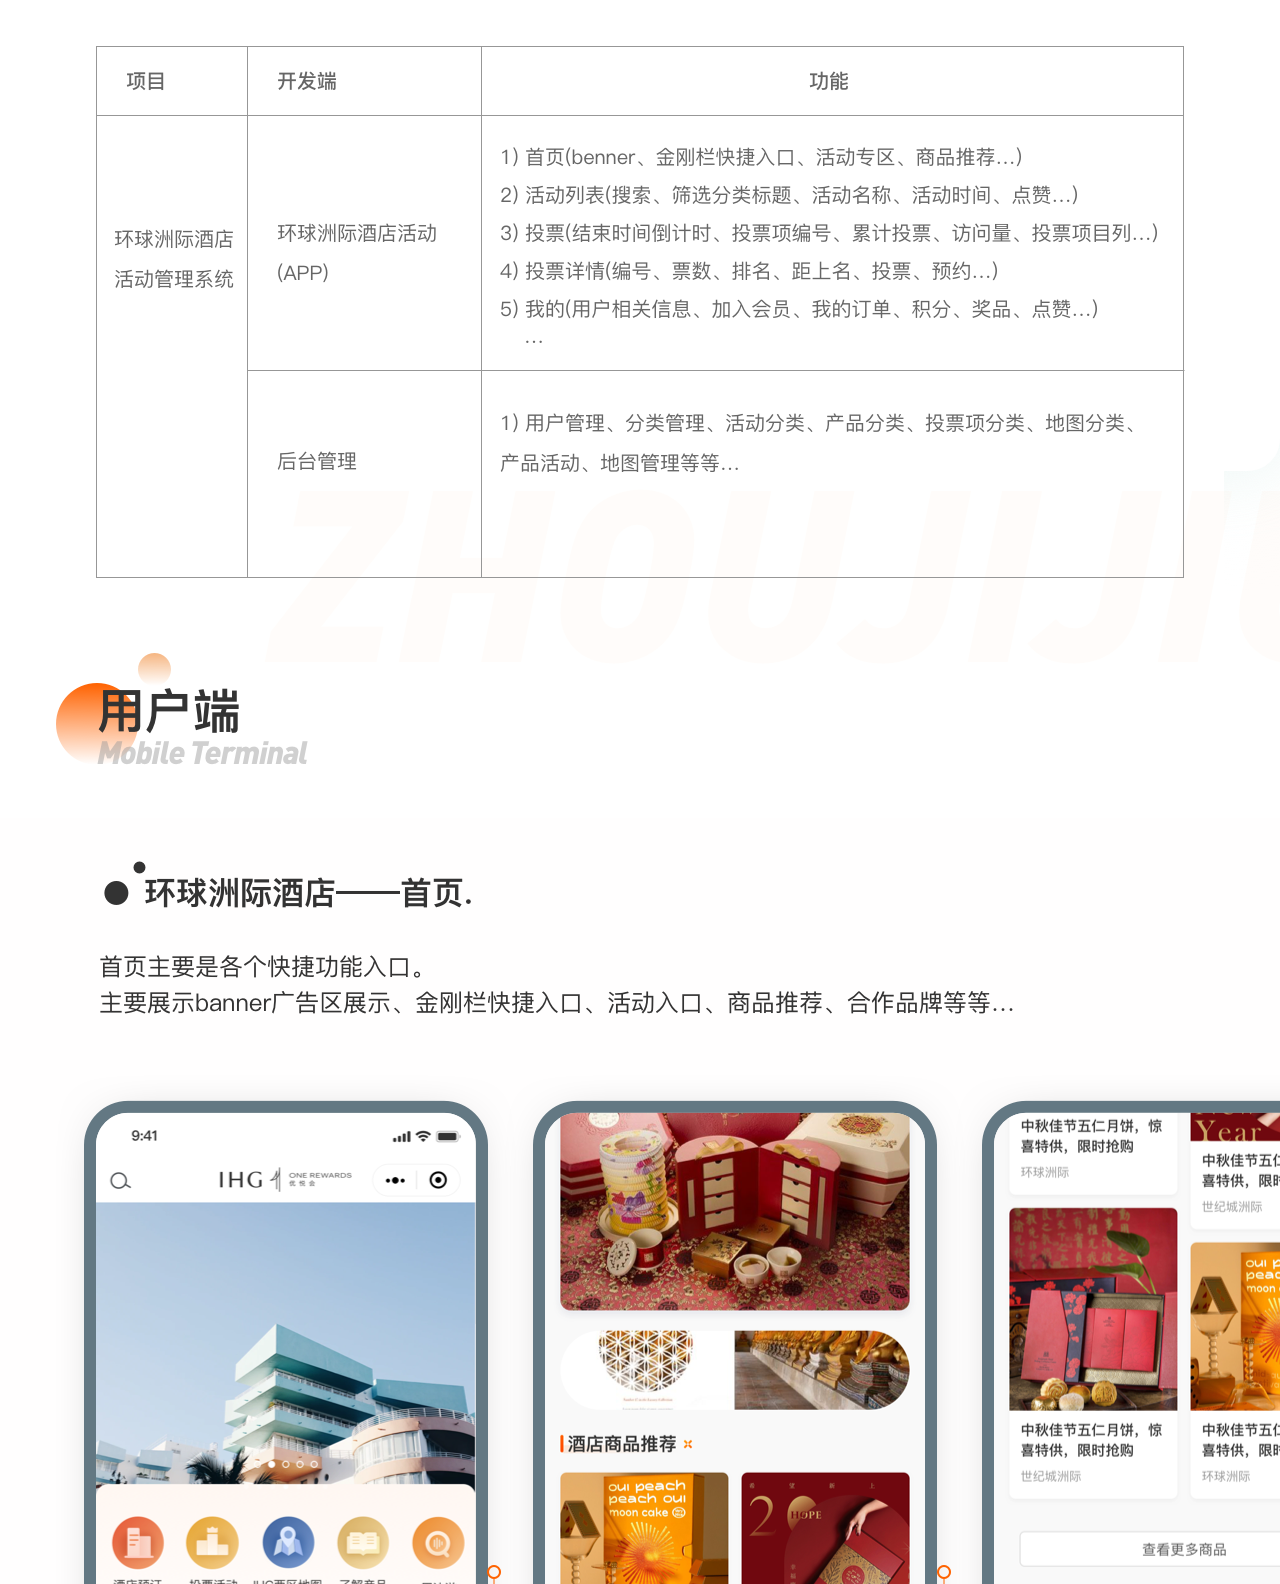 全球化的酒店集团环球洲际酒店微信营销小程序